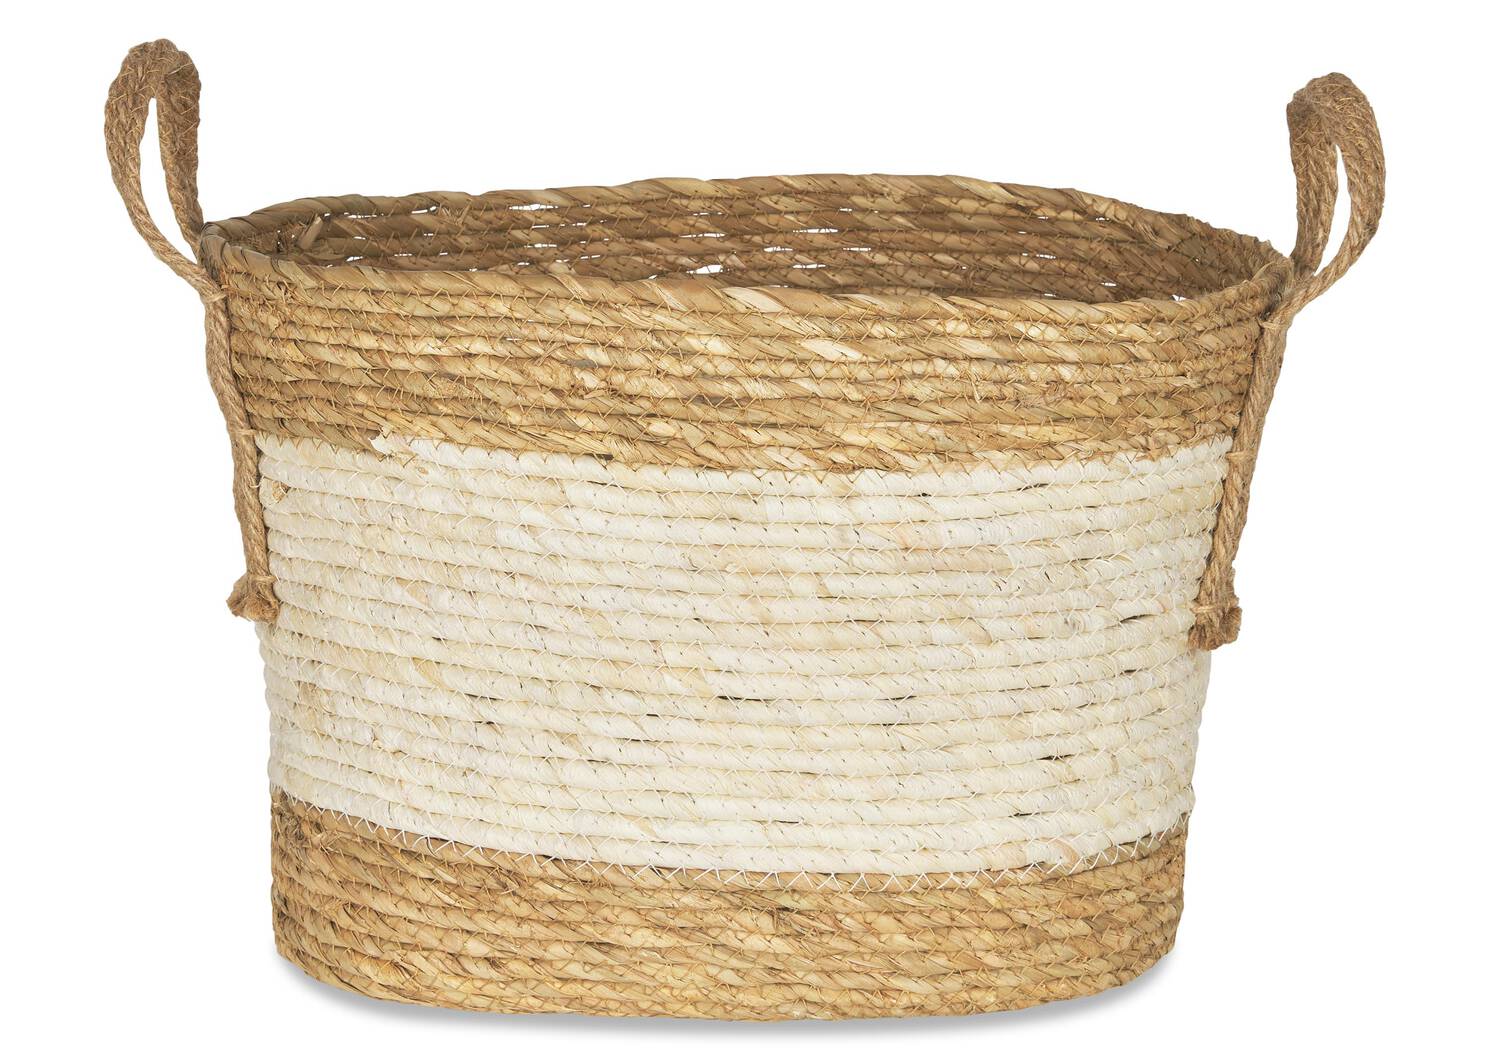 Zelie Basket Large Natural/Ivory